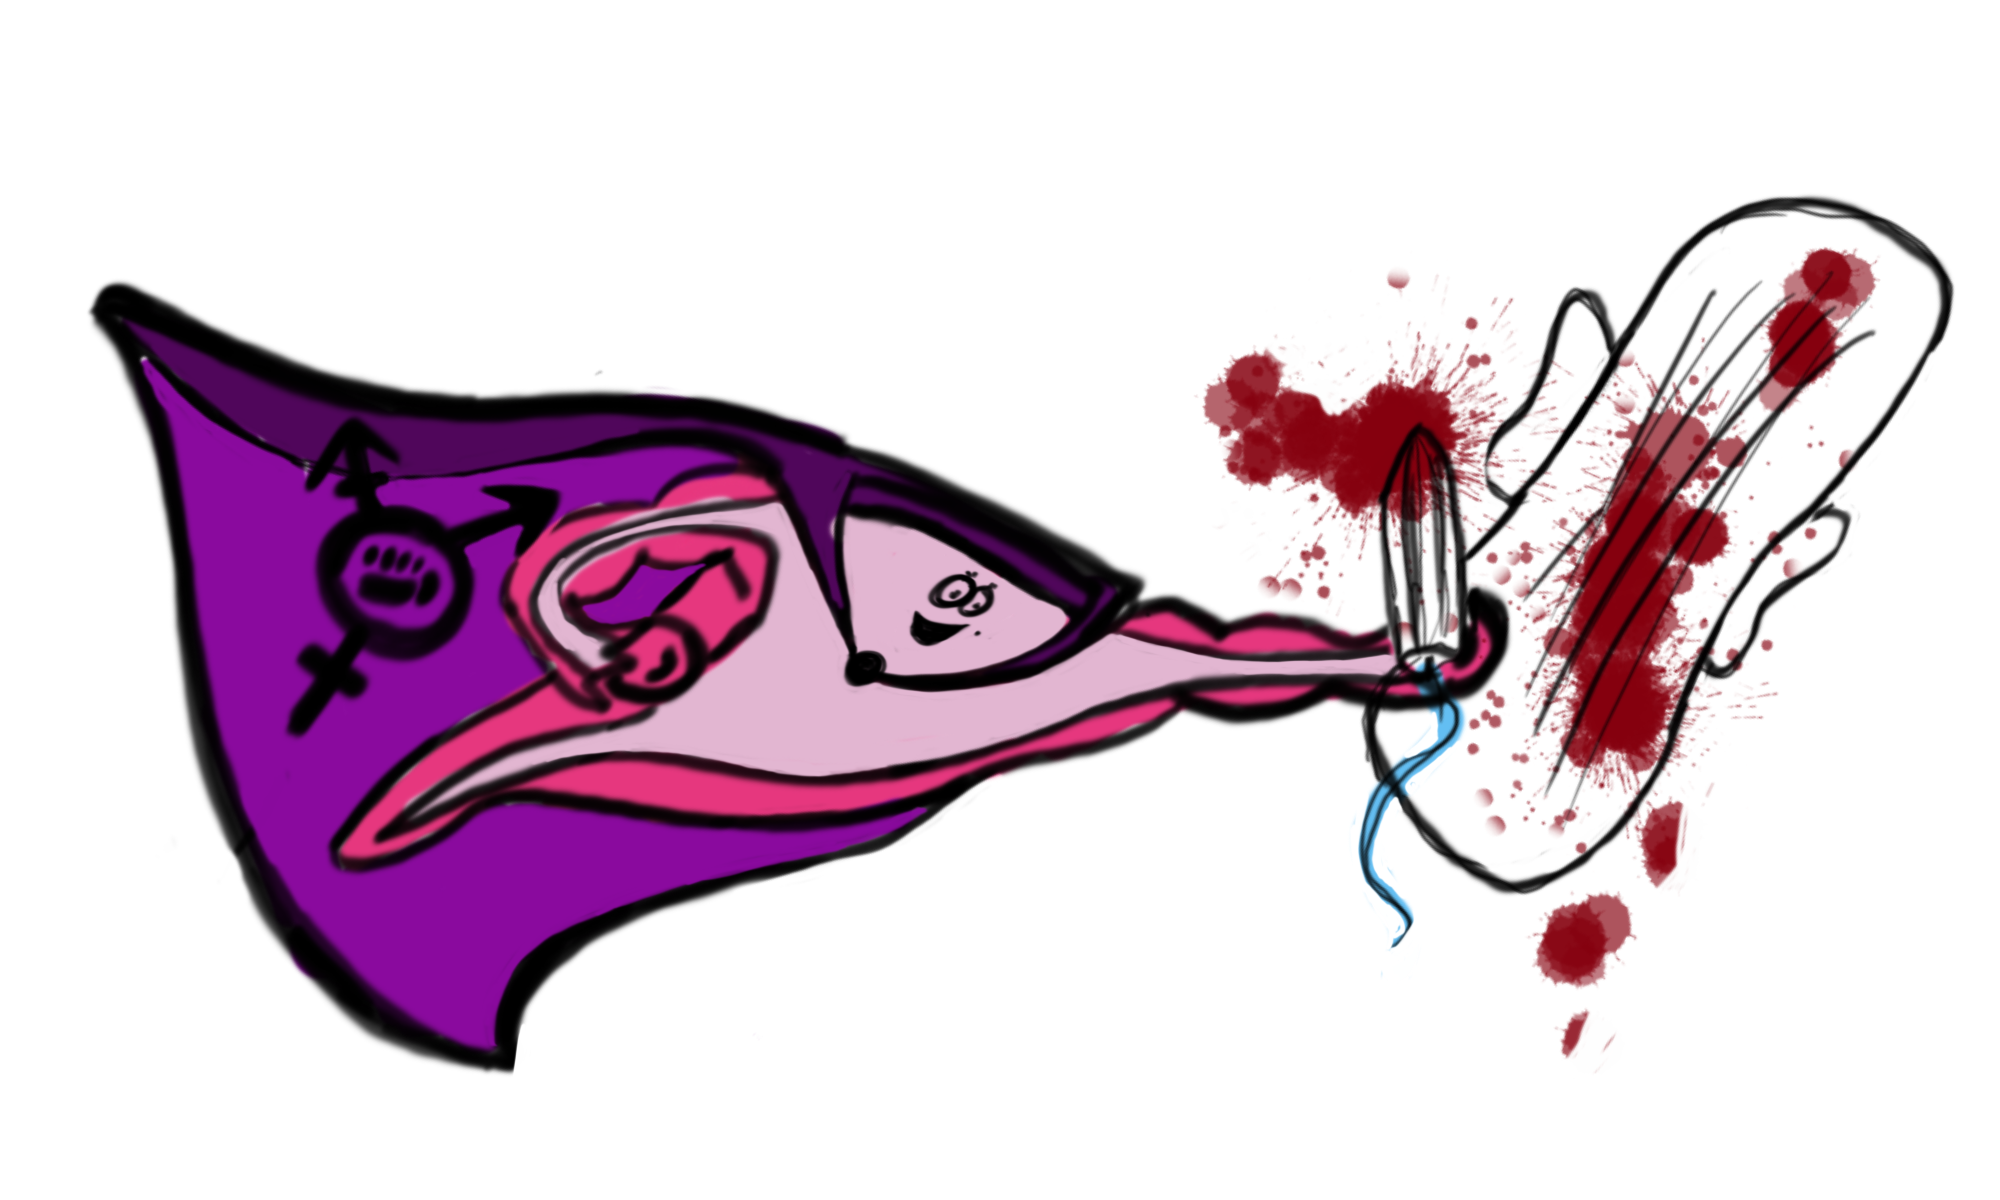 Gezeichnete Abbildung eines fliegenden rosa Uterus, der einen lila Umhang mit queerfeministischem Zeichen trägt. Die ausgestreckte rechte Faust des Uterus hält einen Tampon, an dessen Spitze Blut und dahinter Blutspritzer sind. Rechts daneben ist eine Binde zu sehen, ebenfalls mit Blutspritzern.